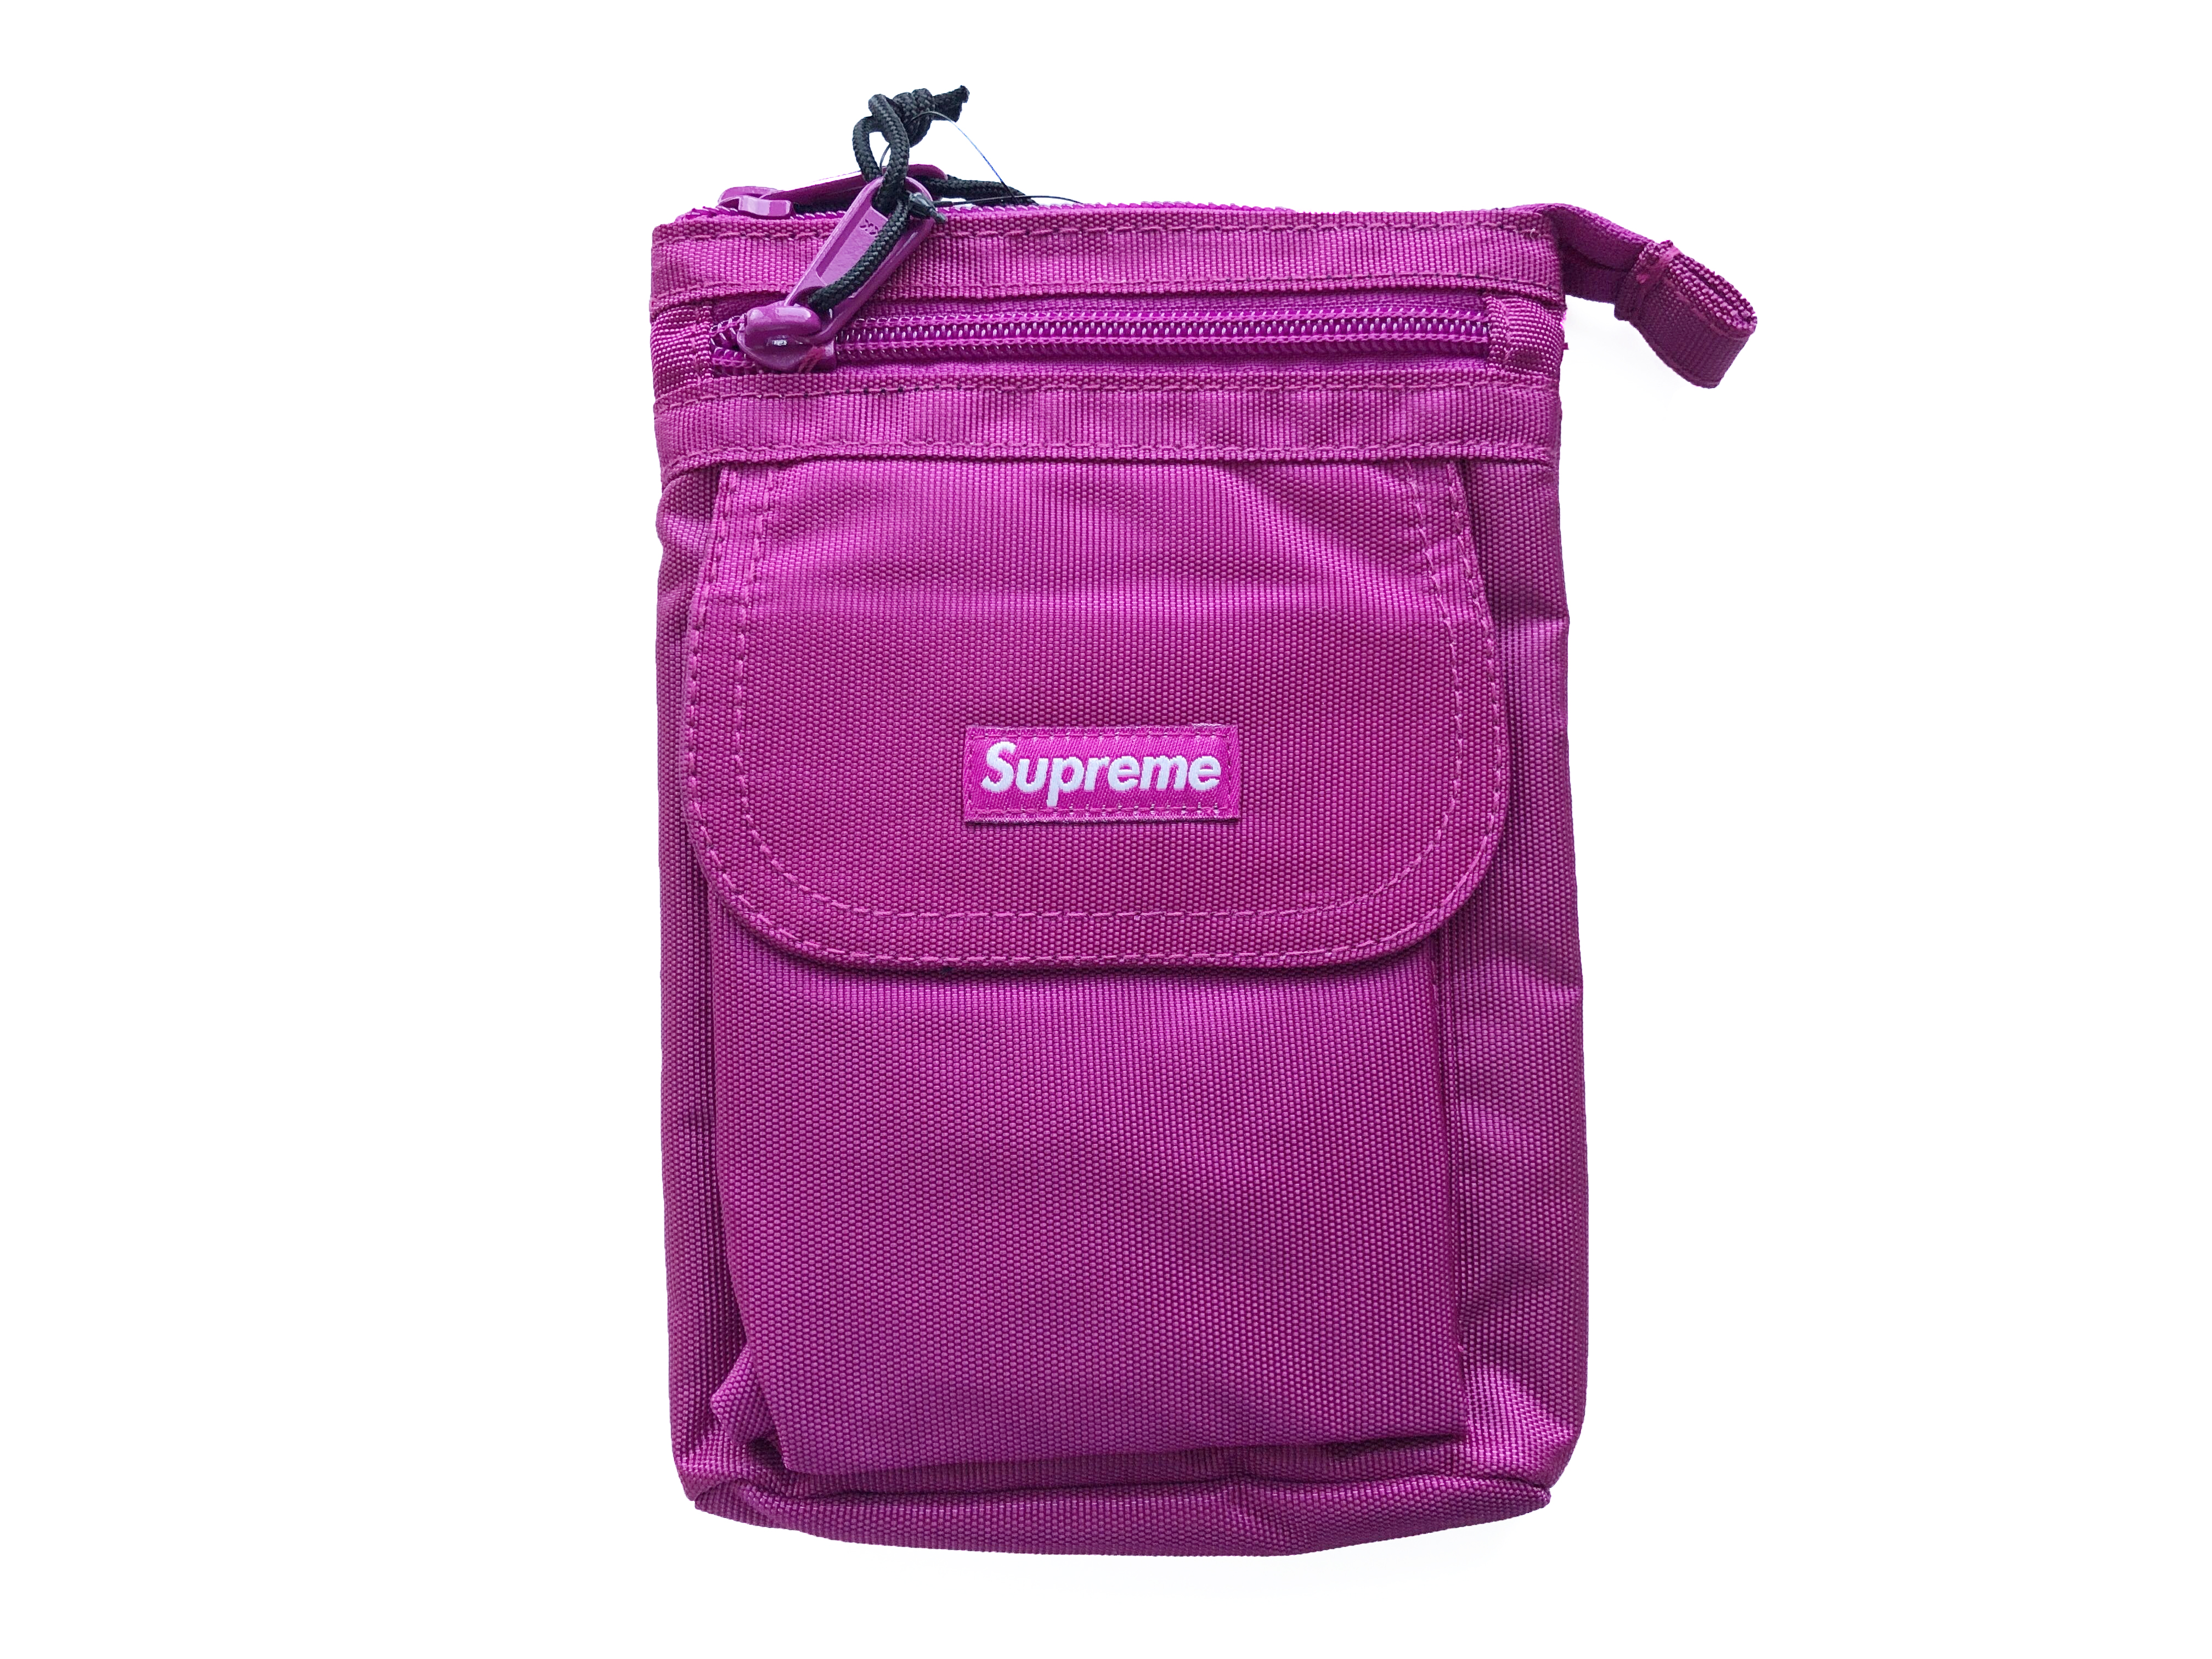 最安値得価 supreme shoulder bag purple 紫 uZw91-m23534514966 sallda.sk